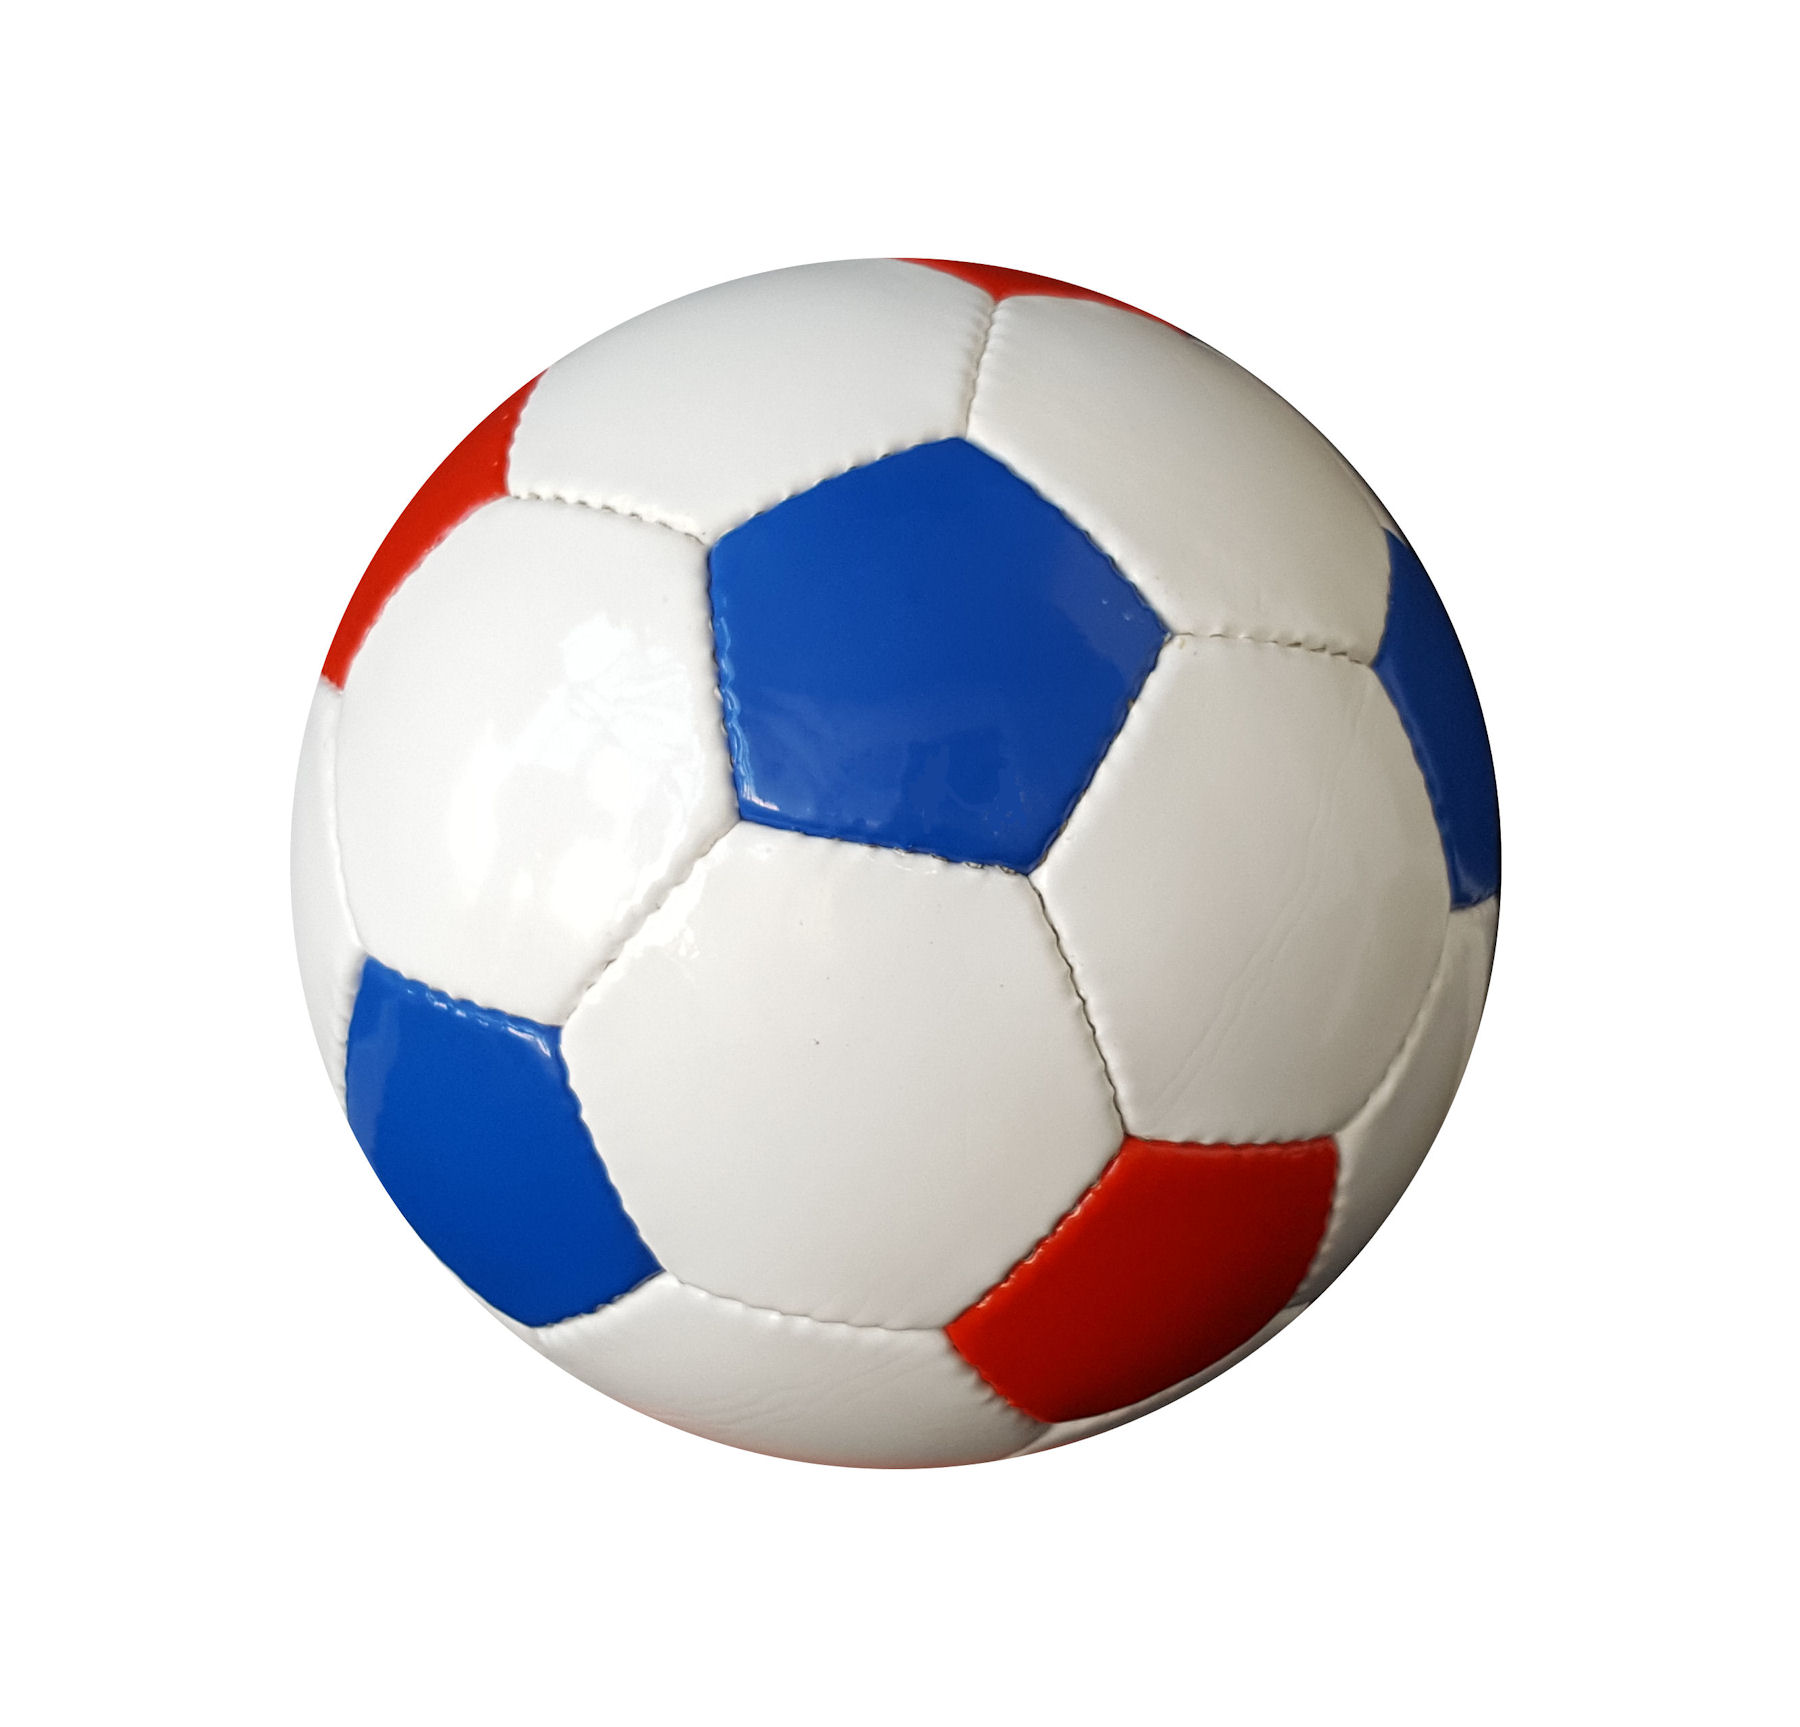 https://www.kwd.nl/media/catalog/product/v/o/voetbal_promo_rood-wit-blauw_nederlandse_voetbal_soccer_ball_1.jpg